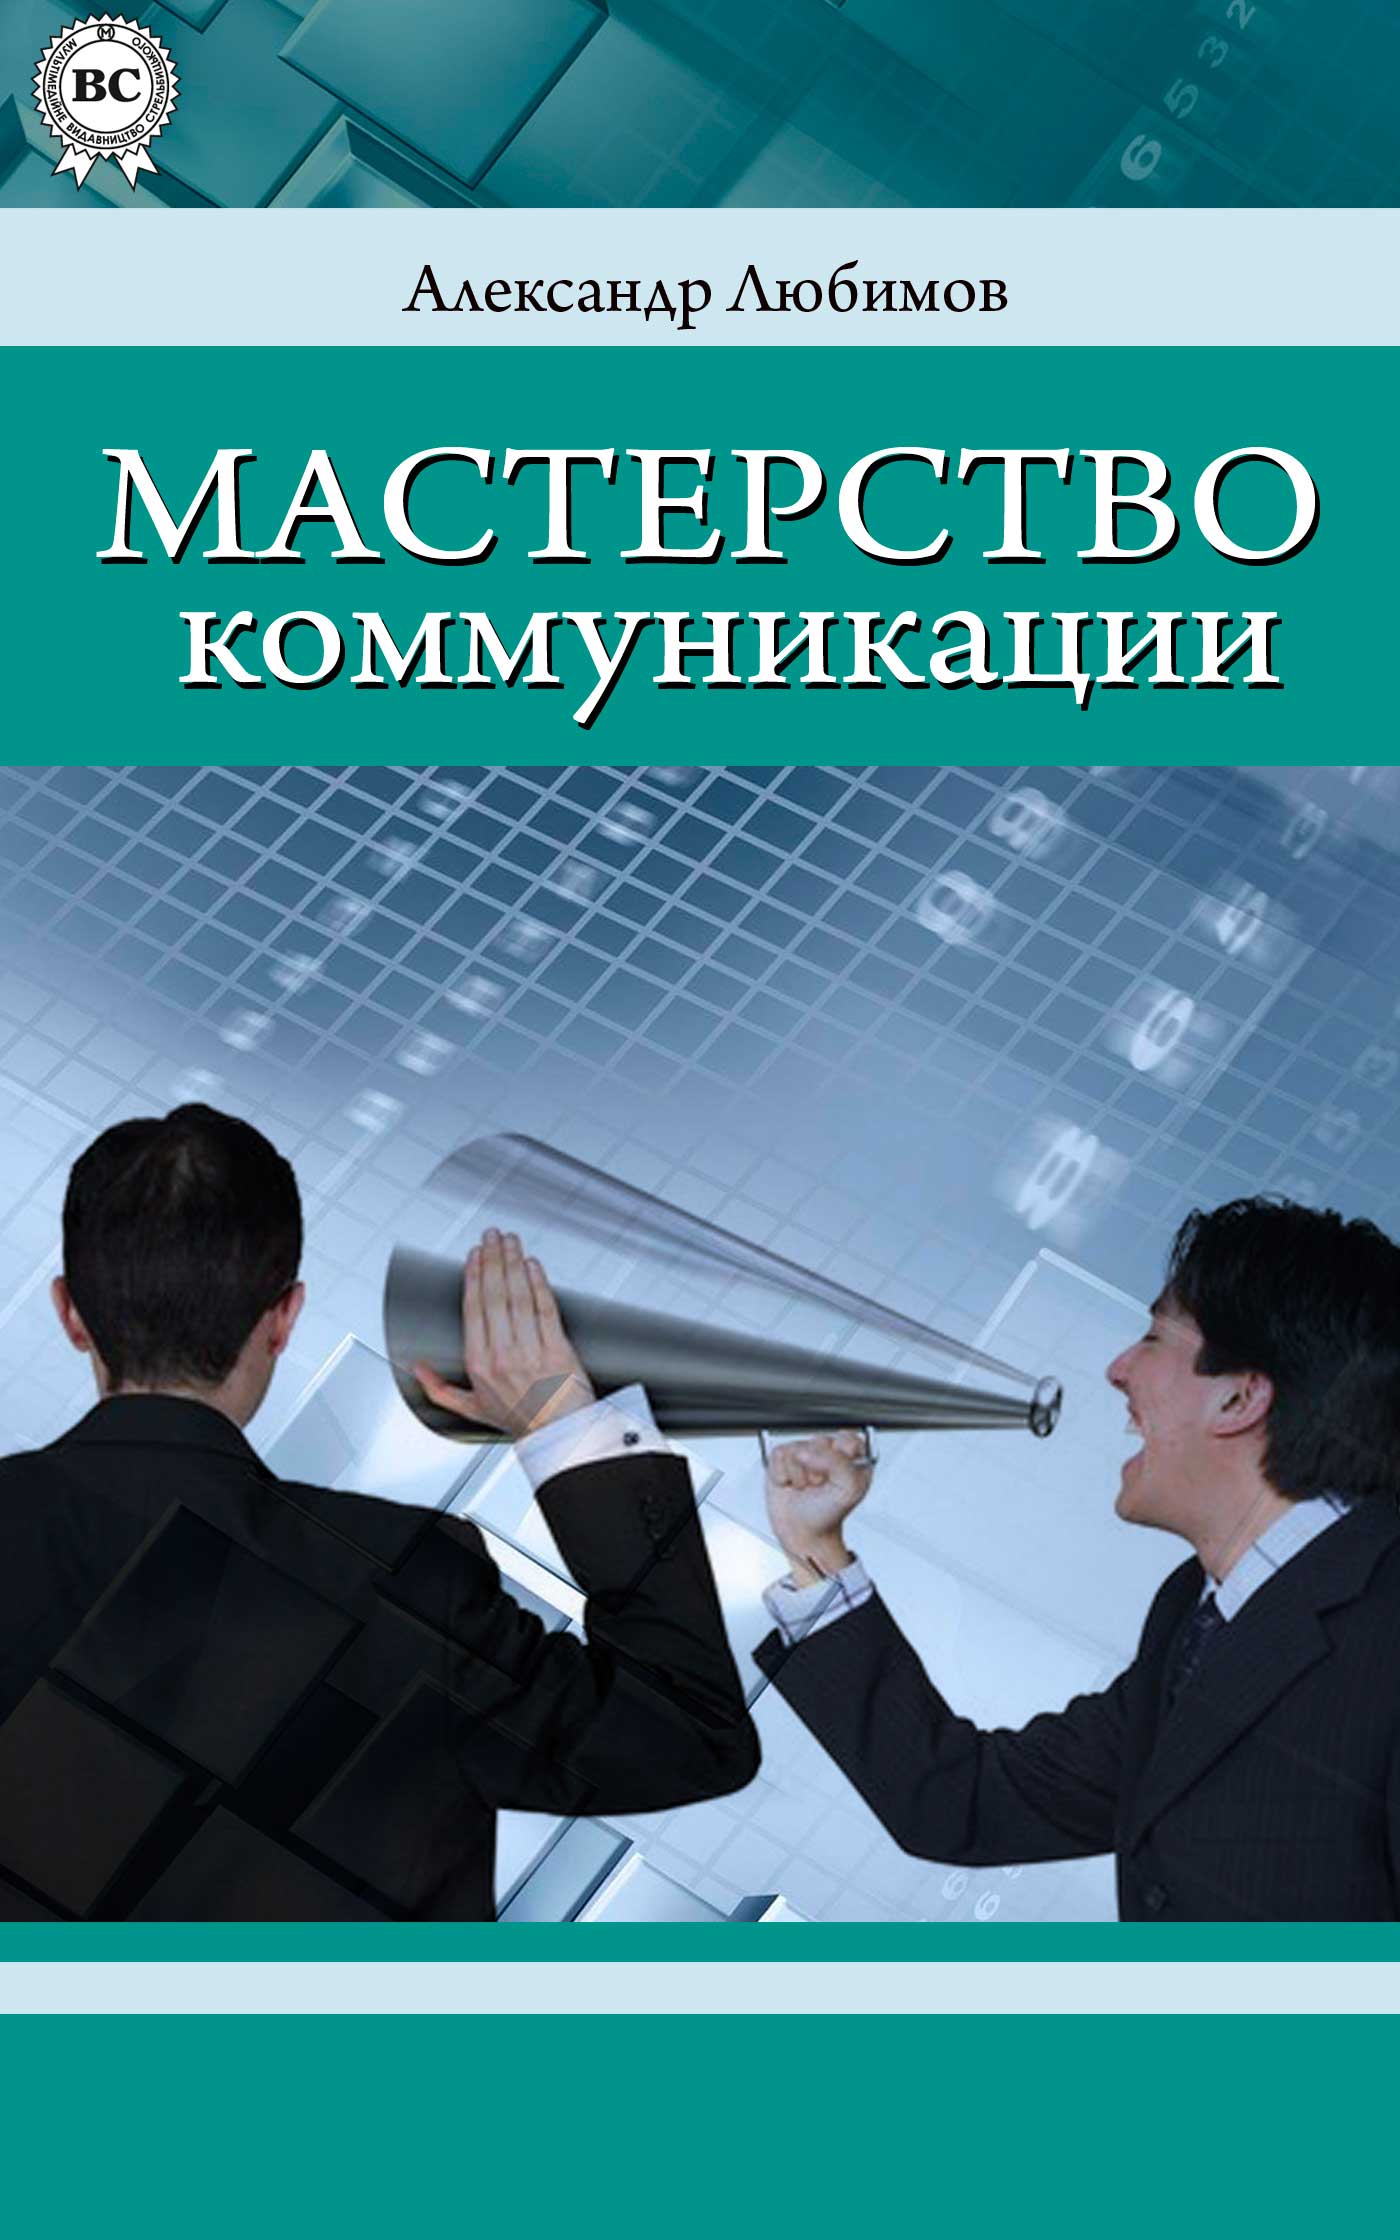 Книга Мастерство коммуникации из серии , созданная Александр Любимов, может относится к жанру Личностный рост, Психотерапия и консультирование. Стоимость электронной книги Мастерство коммуникации с идентификатором 6997405 составляет 71.00 руб.